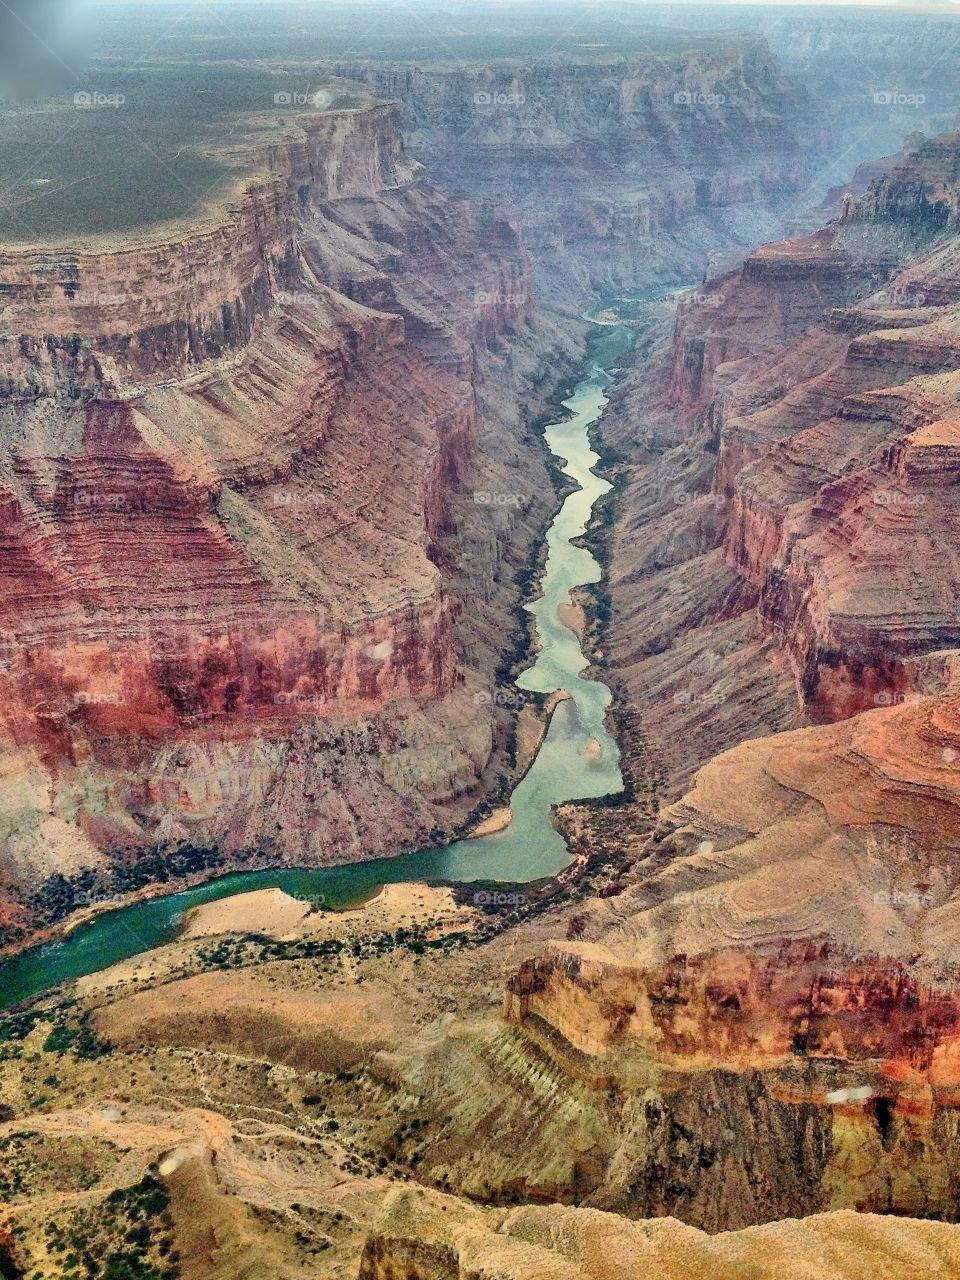 Colorado river, Grand canyon, Arizona